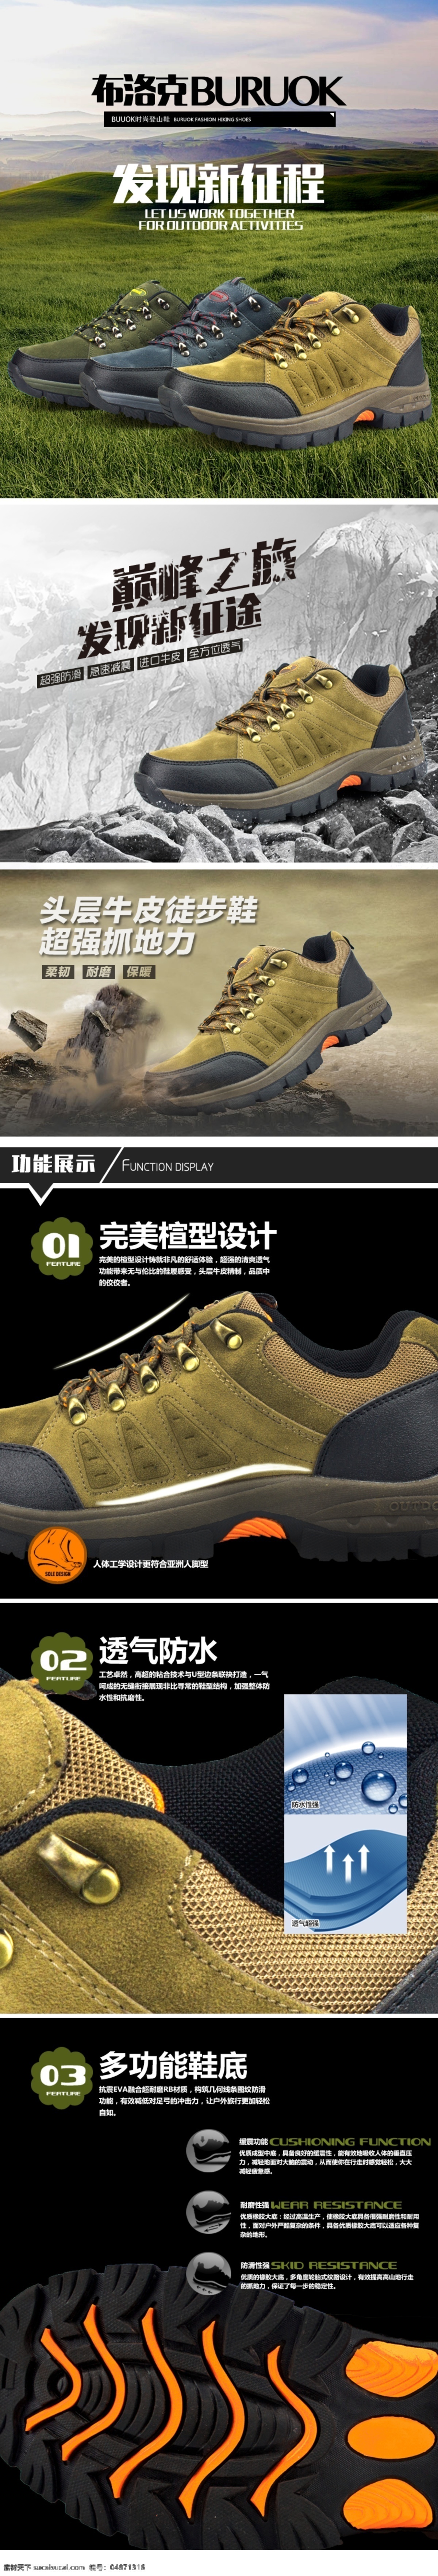 男鞋描述 休闲鞋描述 商务鞋描述 男鞋 户外鞋描述 其他模板 网页模板 淘宝界面设计